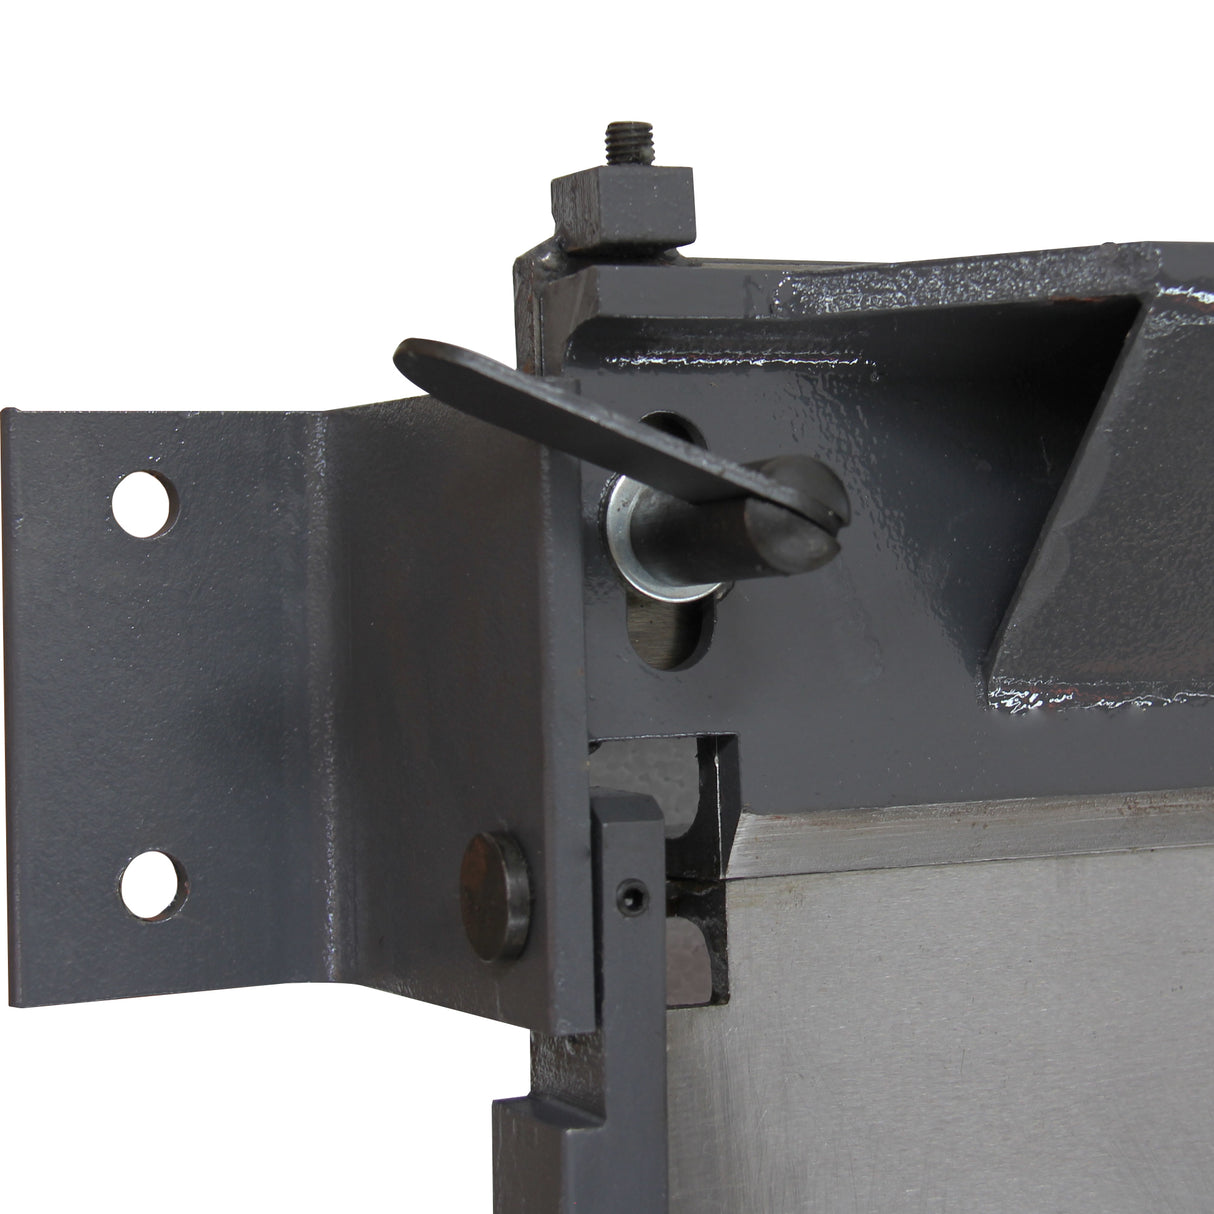 Kaka Industrial W-4018 Sheet Metal Bending Brake 40-Inch Length Portable Metal Bender 0-90 Degrees Adjustable Steel Bender, 20 Gauge Mild Steel and 16 Gauge Aluminum Metal Bending